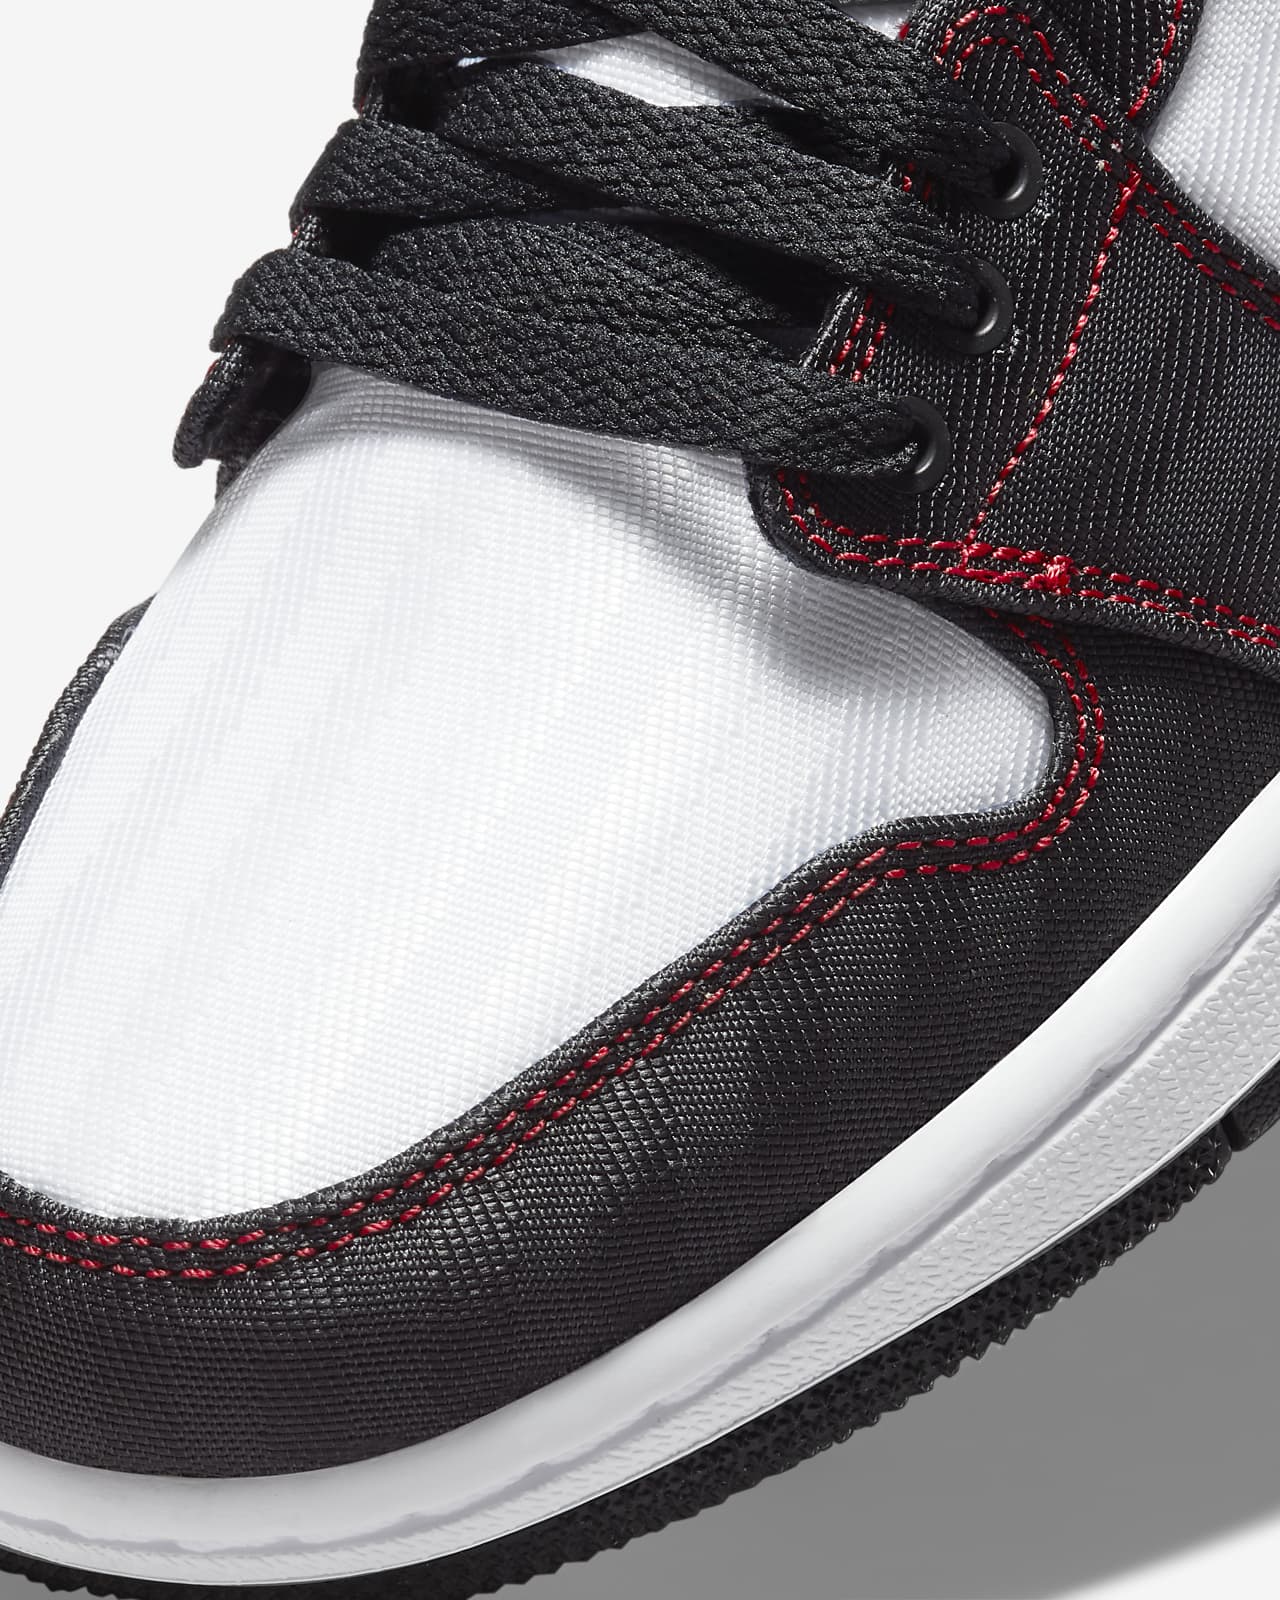 Air Jordan 1 red low jordan 1 Low SE Women's Shoes. Nike.com